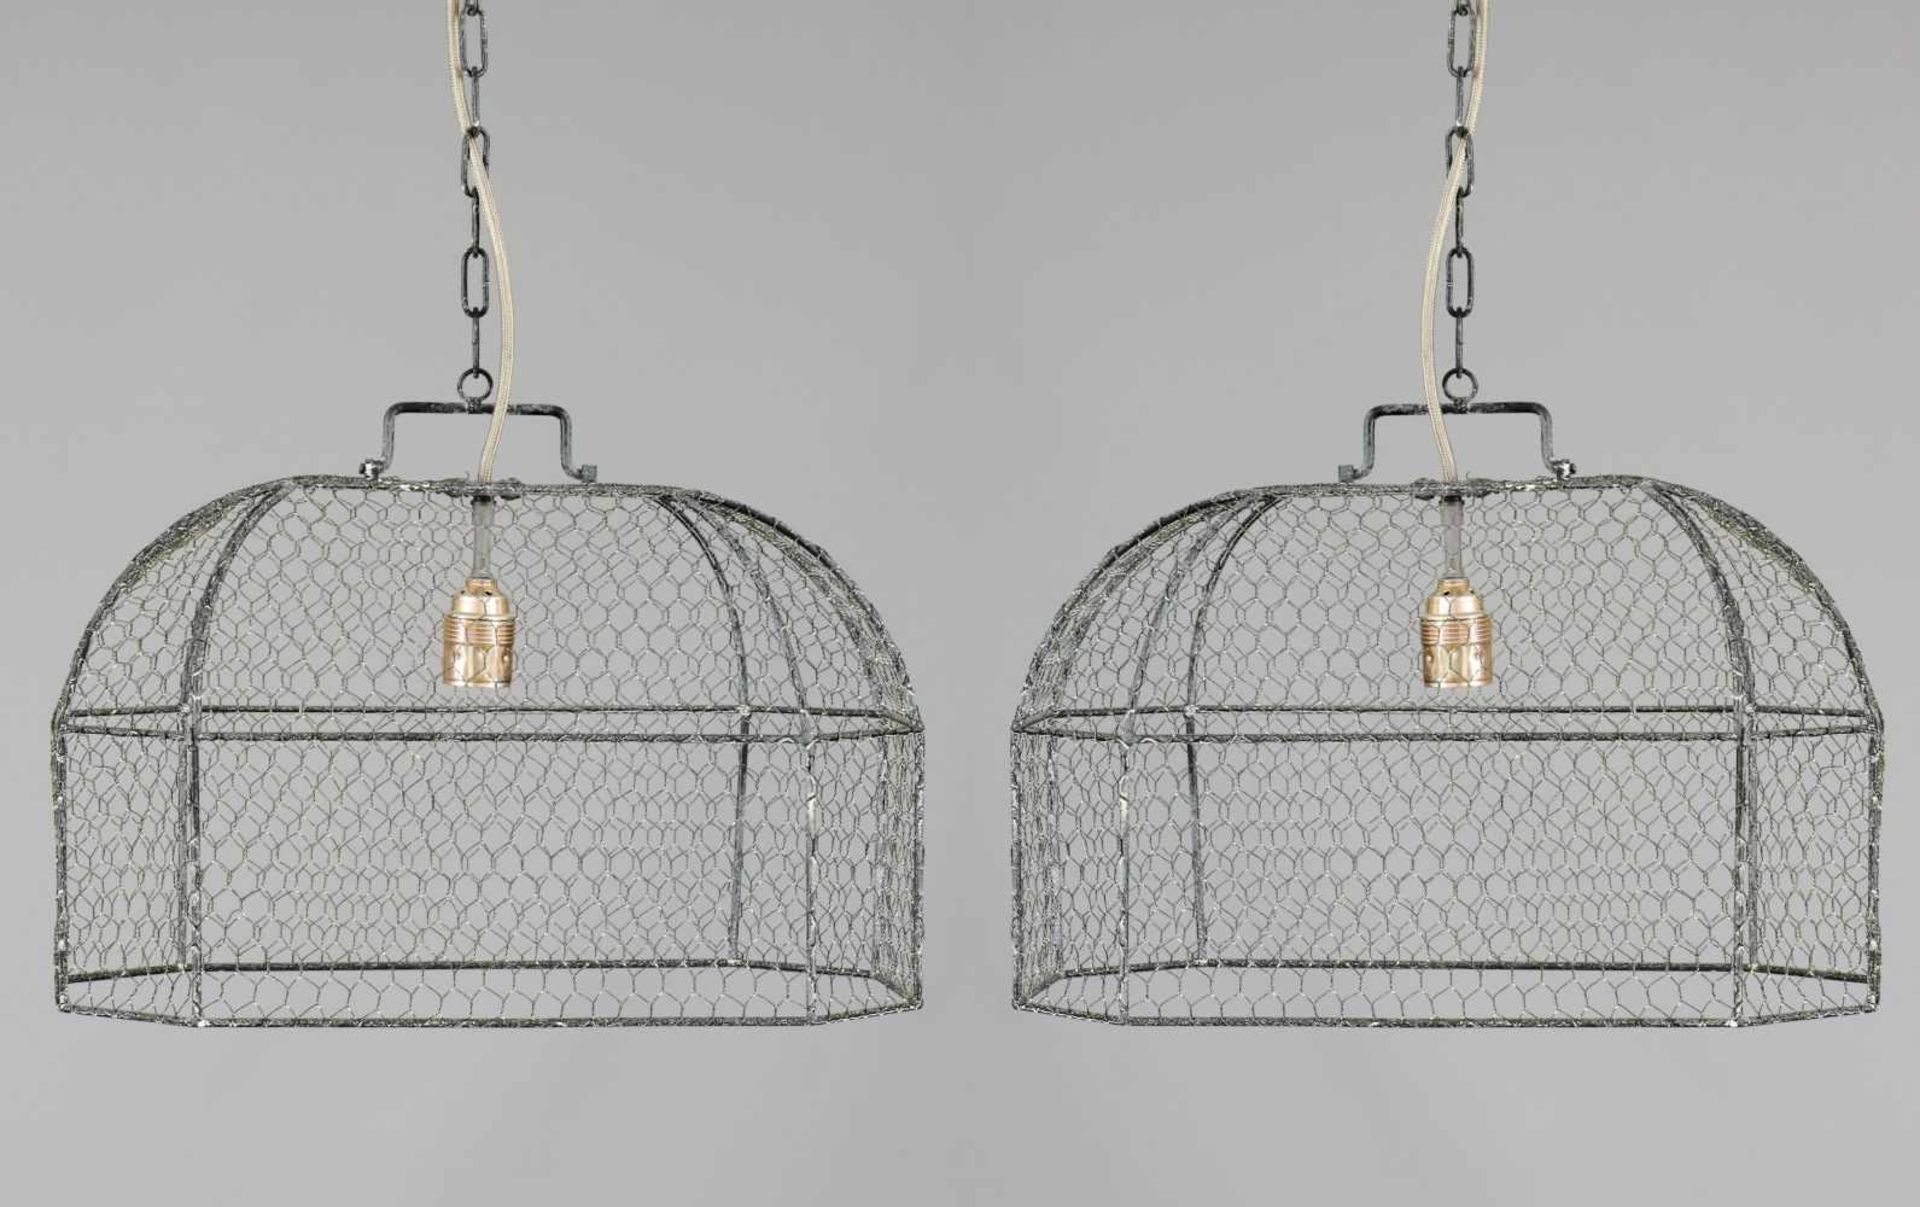 Paar Deckenlampen in Form eines KäfigsKaninchendraht und Metallgestell, grau patiniert, 1-flammig - Image 3 of 3